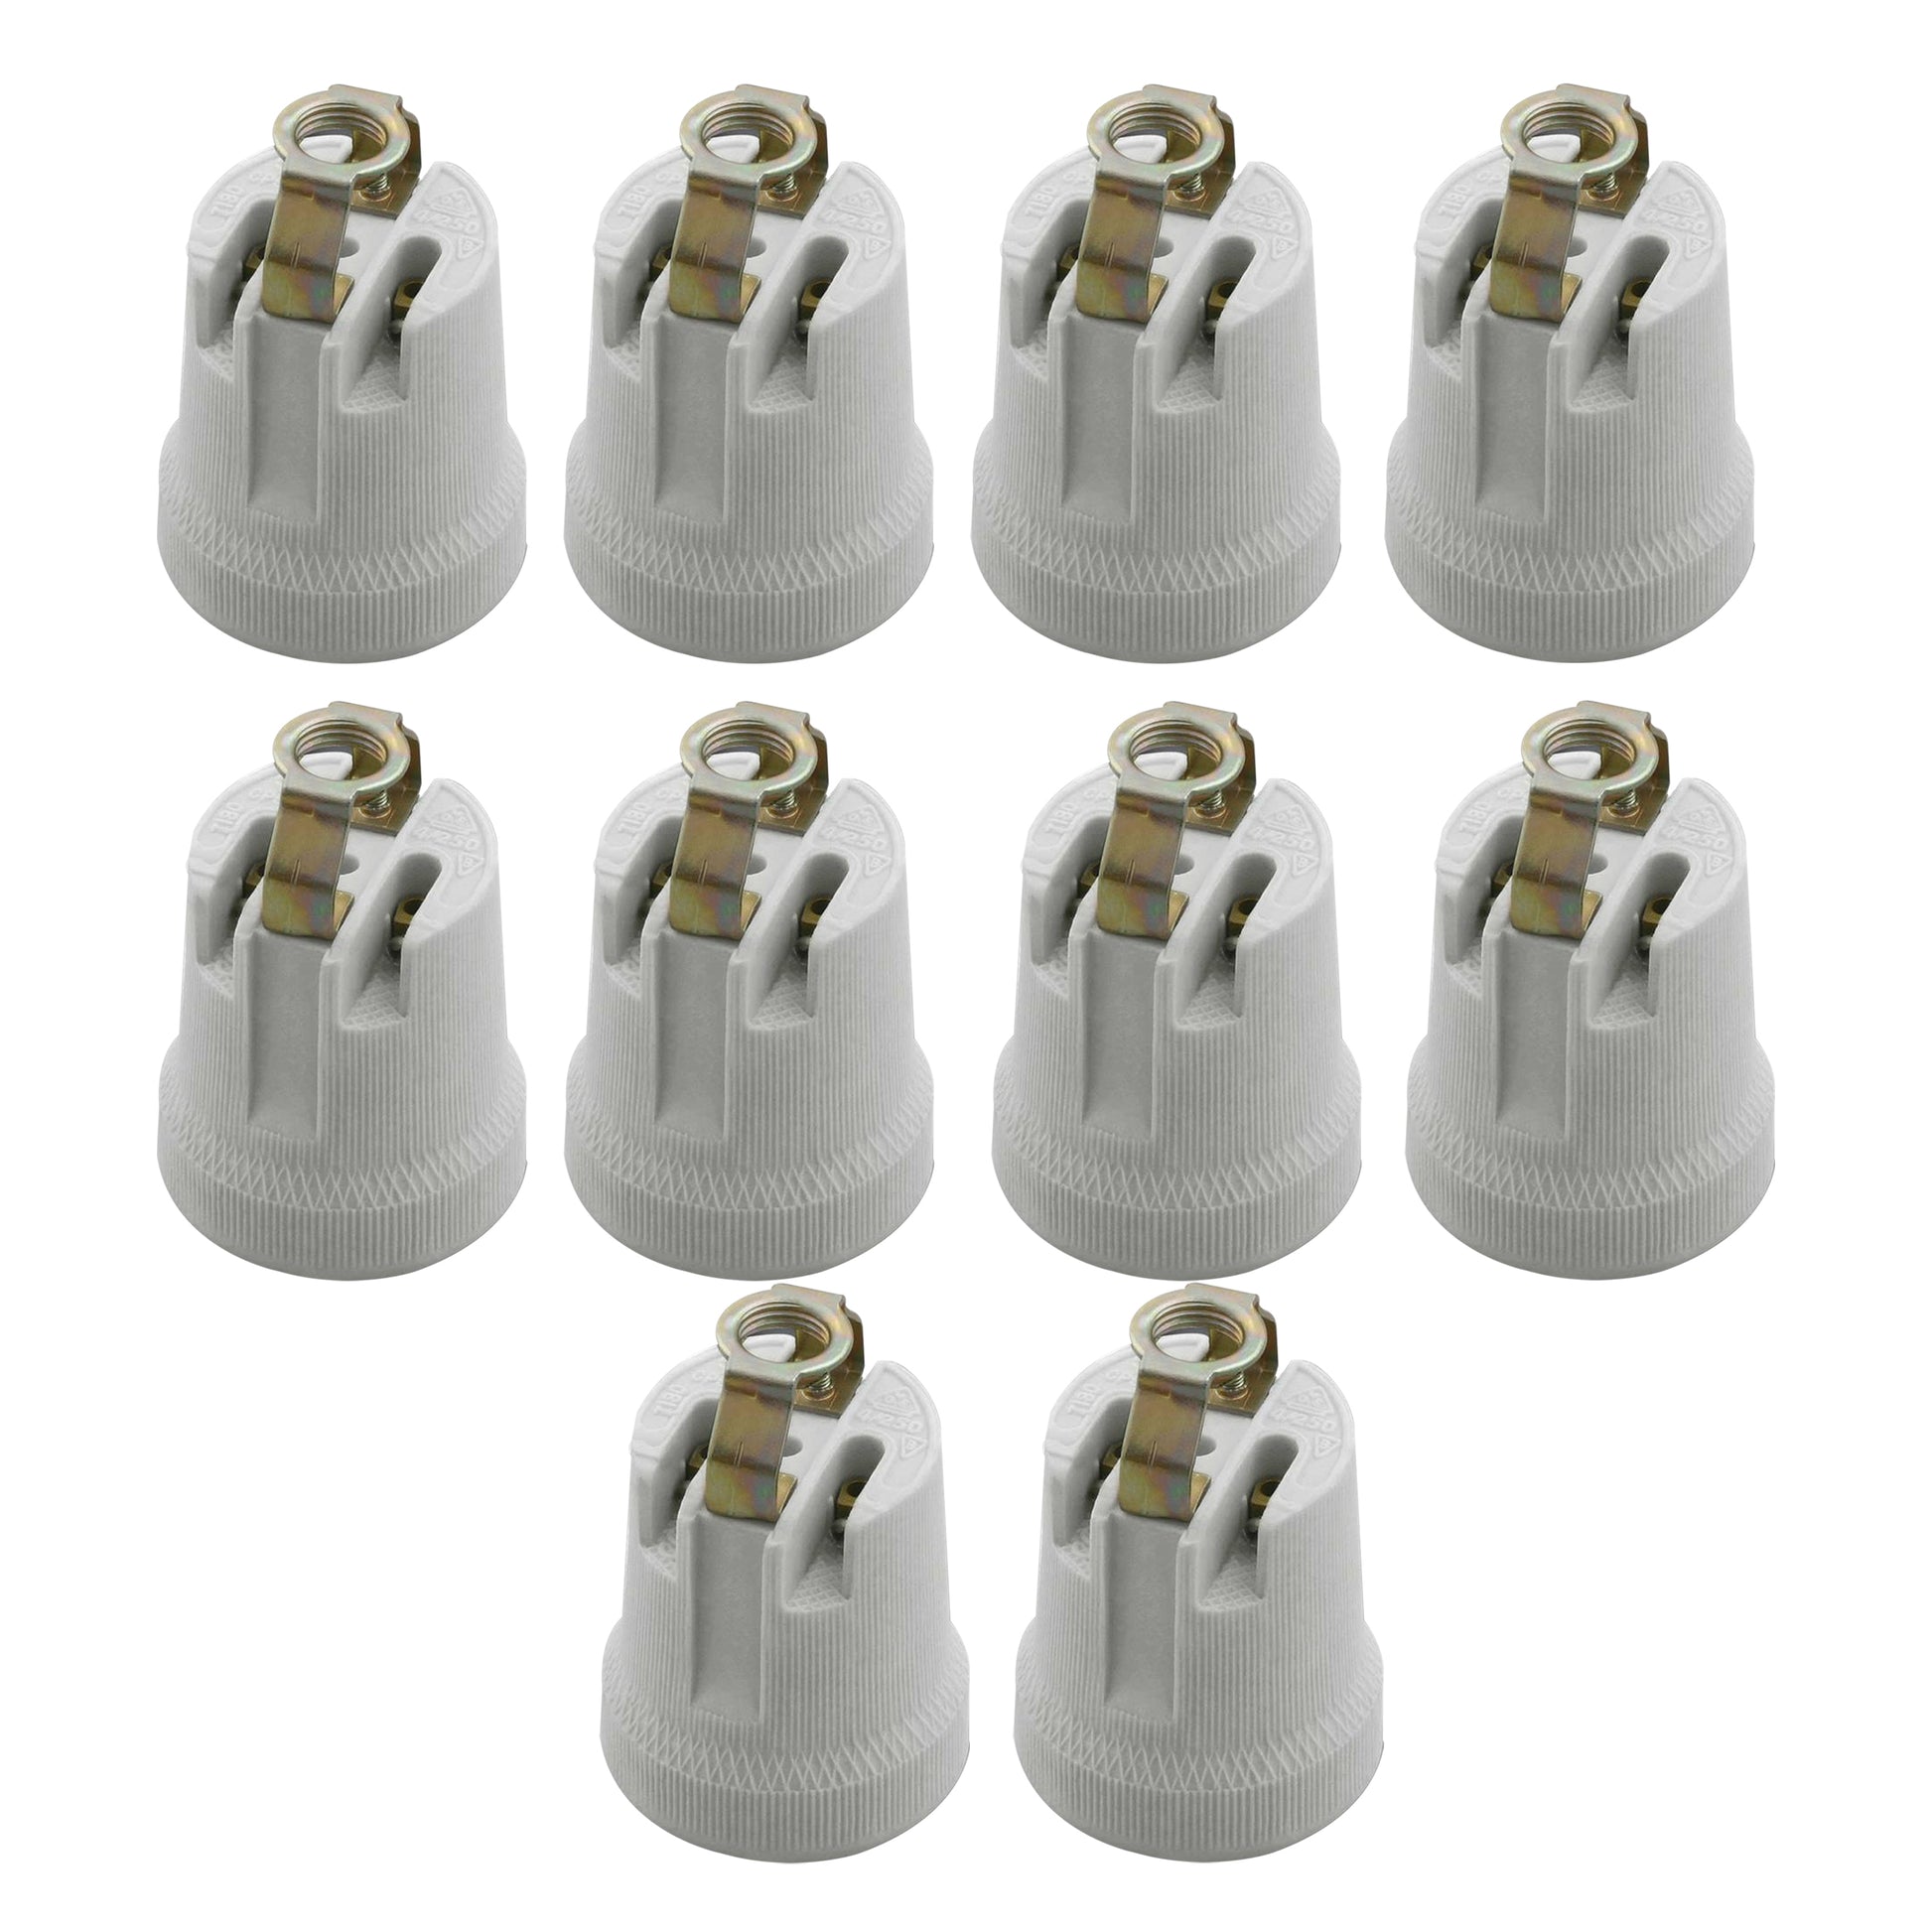 10 Pack E27 Bulb Holder Edison Screw White Ceramic Porcelain Lamp holder For Table Lamp E27 60W Plain Lamp holder Socket UK.